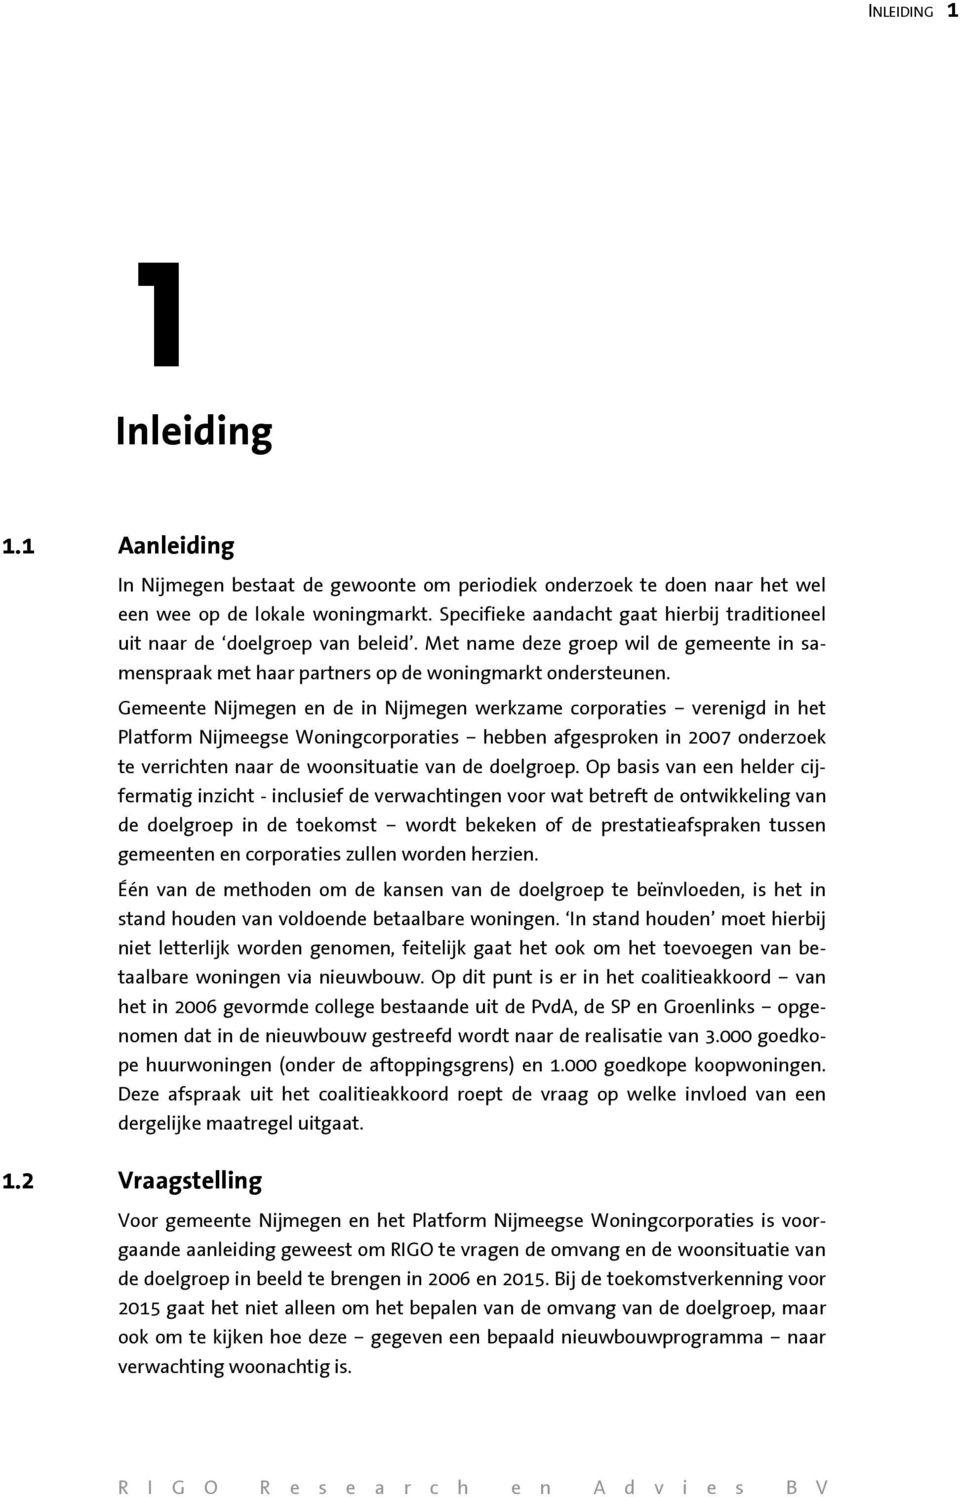 Gemeente Nijmegen en de in Nijmegen werkzame corporaties verenigd in het Platform Nijmeegse Woningcorporaties hebben afgesproken in 2007 onderzoek te verrichten naar de woonsituatie van de doelgroep.